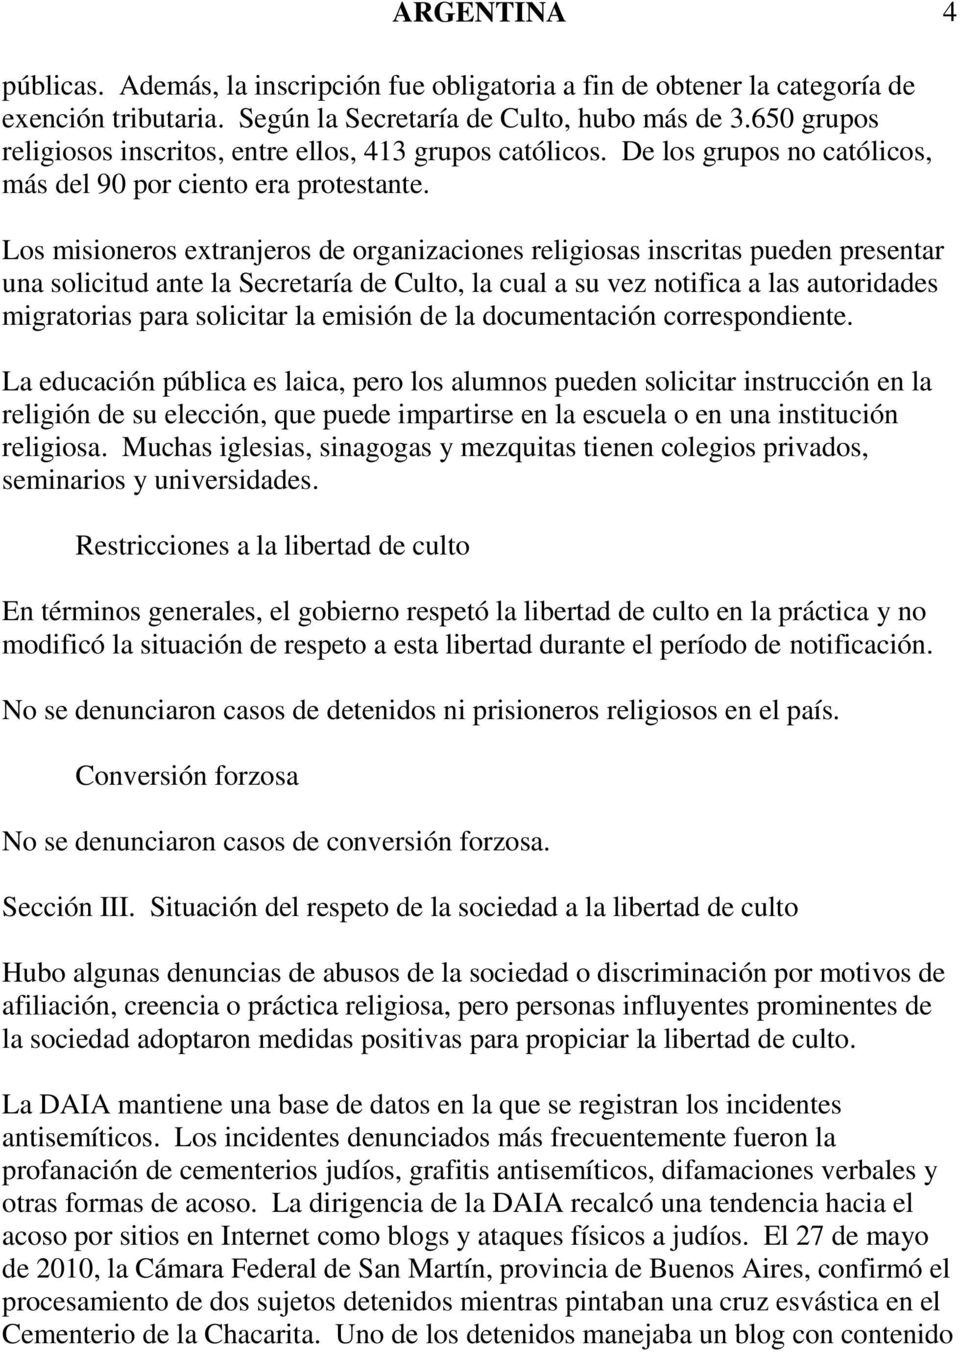 Los misioneros extranjeros de organizaciones religiosas inscritas pueden presentar una solicitud ante la Secretaría de Culto, la cual a su vez notifica a las autoridades migratorias para solicitar la